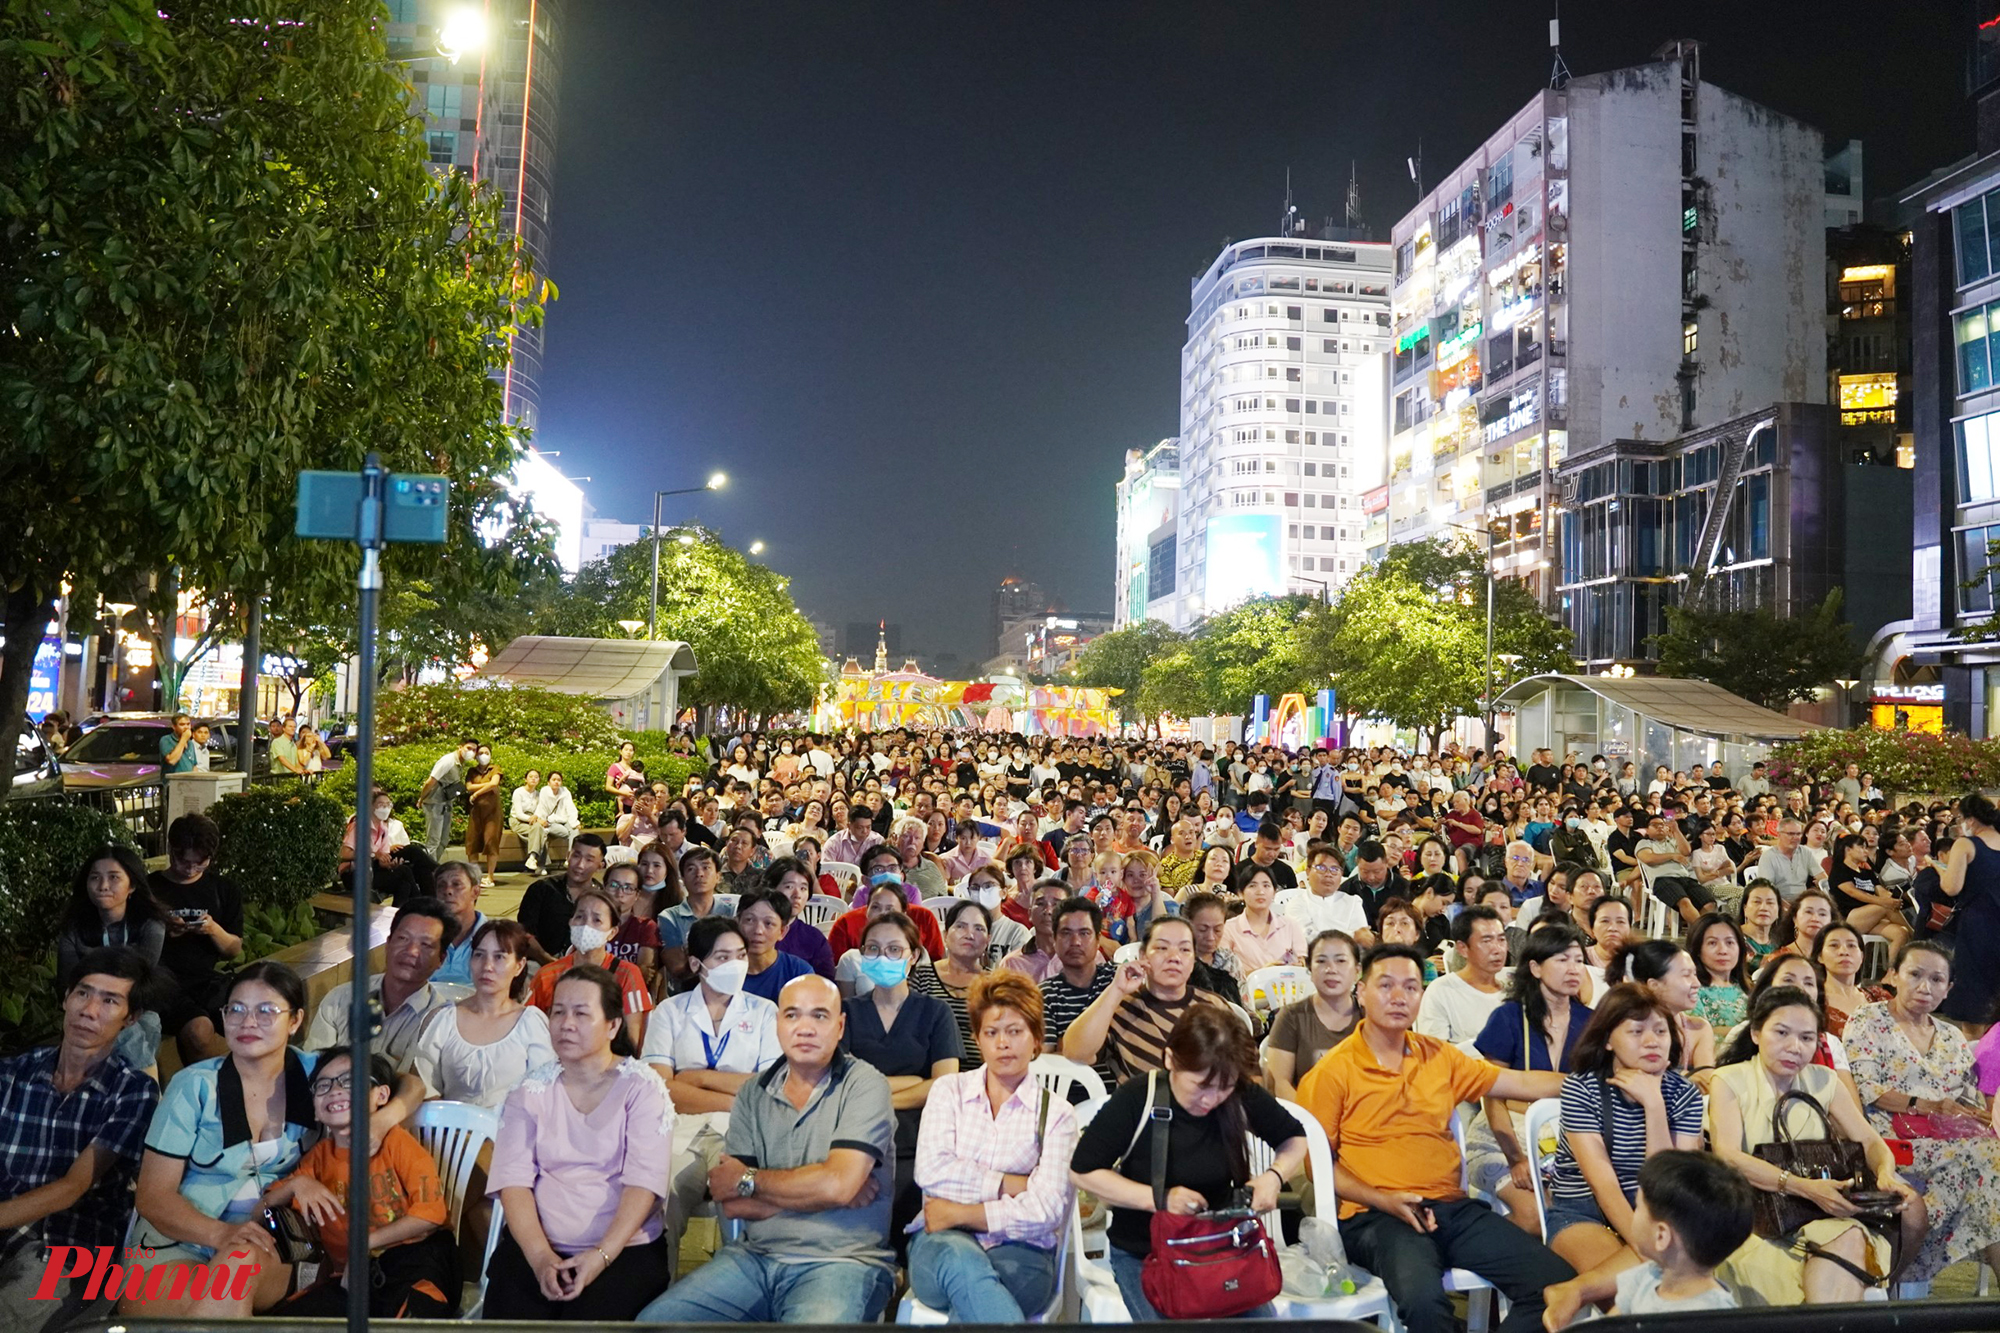 Hàng ngàn người dân có mặt tại đường đi bộ Nguyễn Huệ để theo dõi chương trình khai mạc lễ hội.